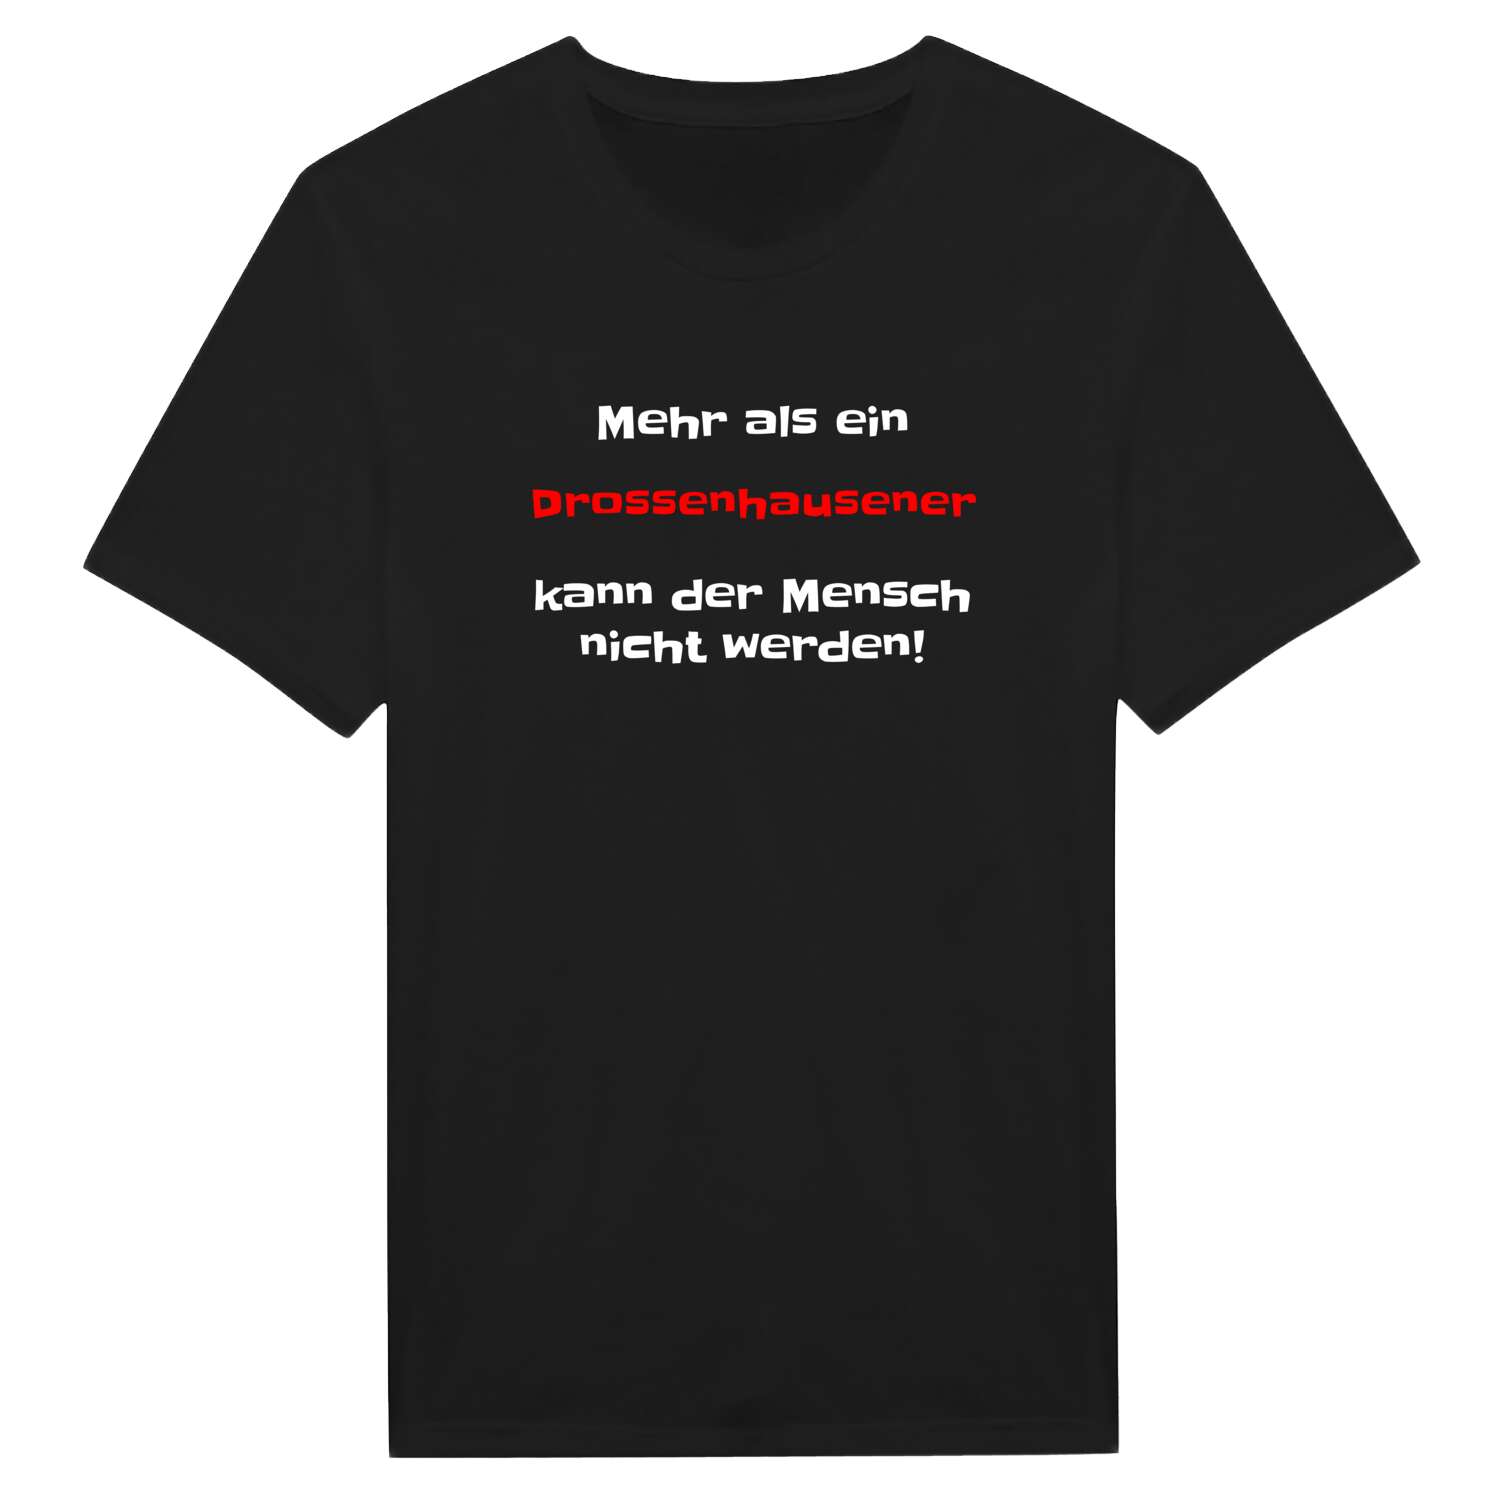 Drossenhausen T-Shirt »Mehr als ein«